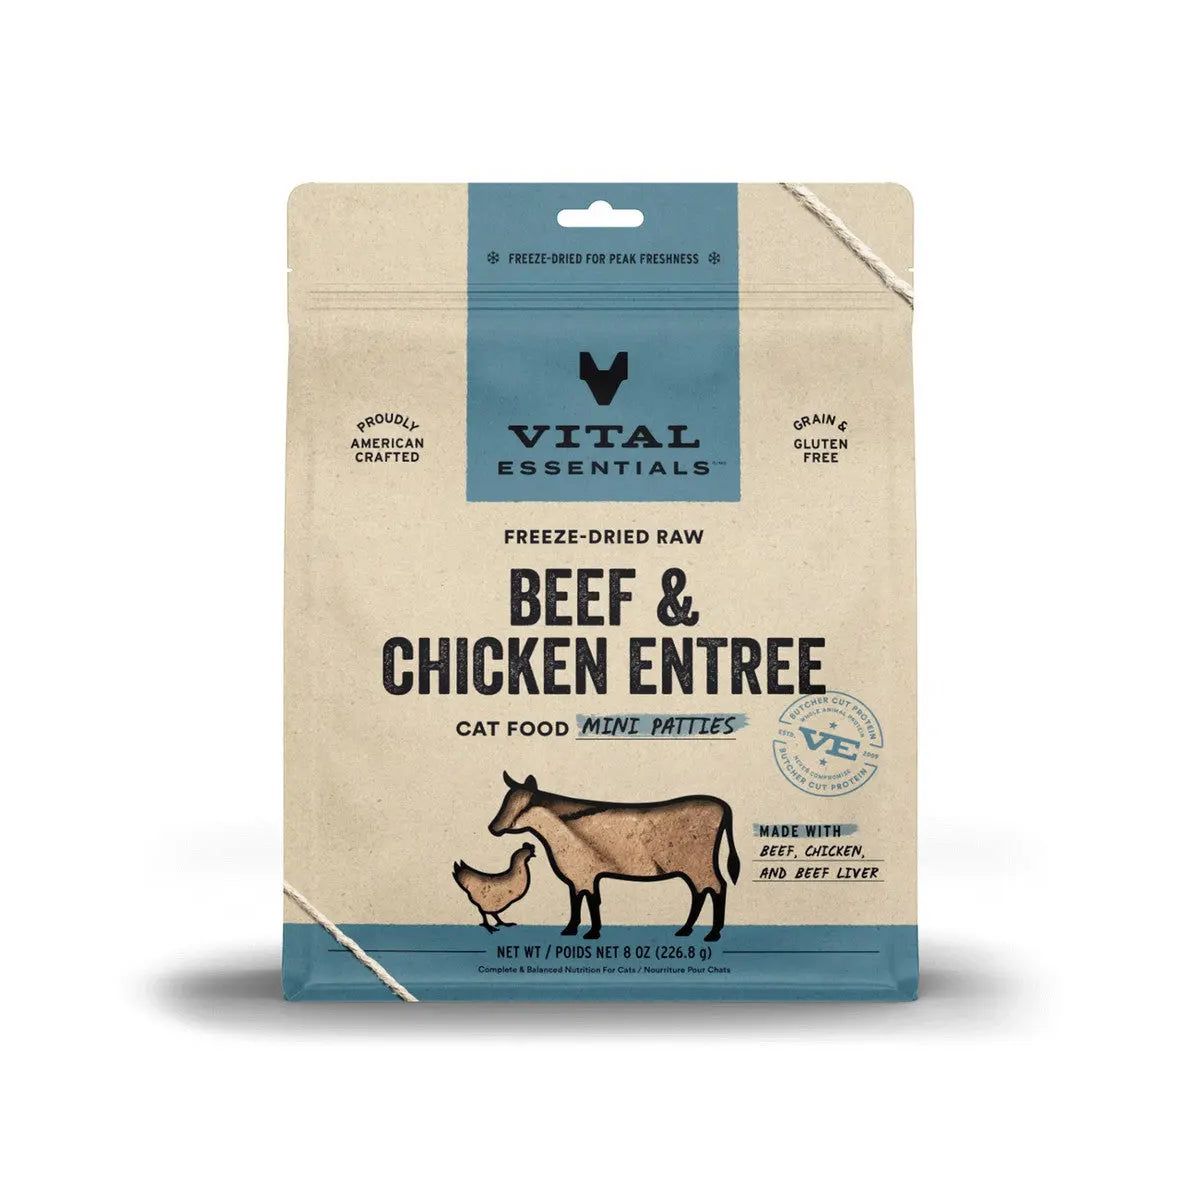 Vital Essentials® Freeze-Dried Raw Beef & Chicken Entree Cat Food Mini Patties Vital Essentials®